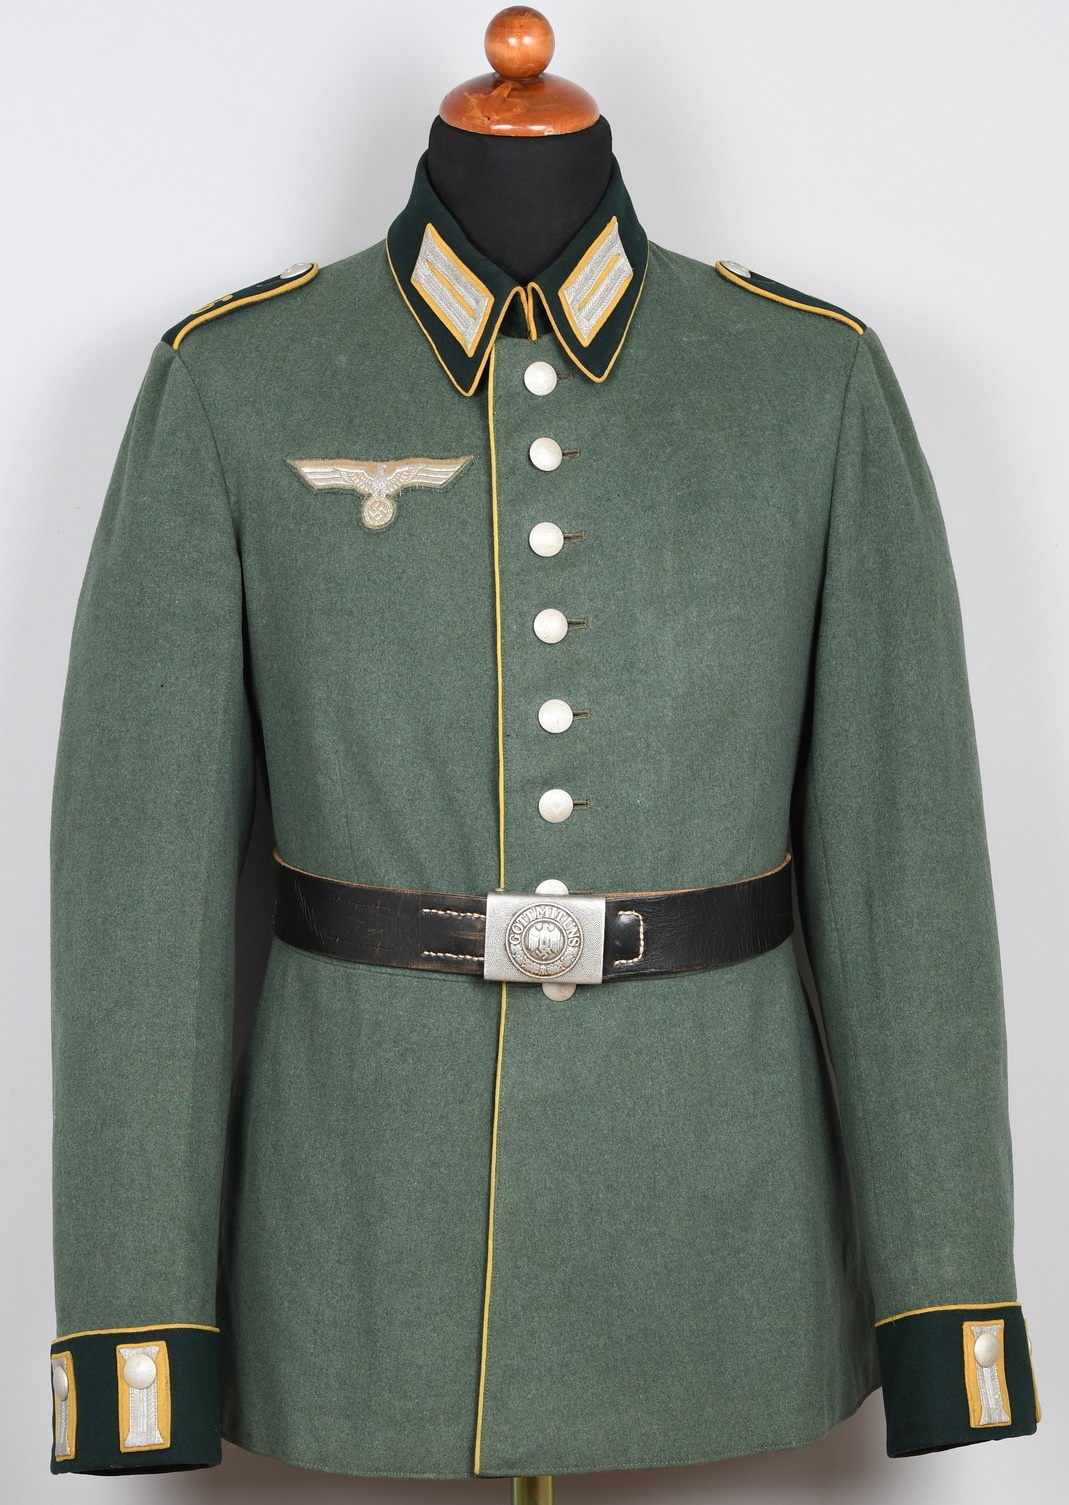 Dress Tunics, Military Stockholm Antiques